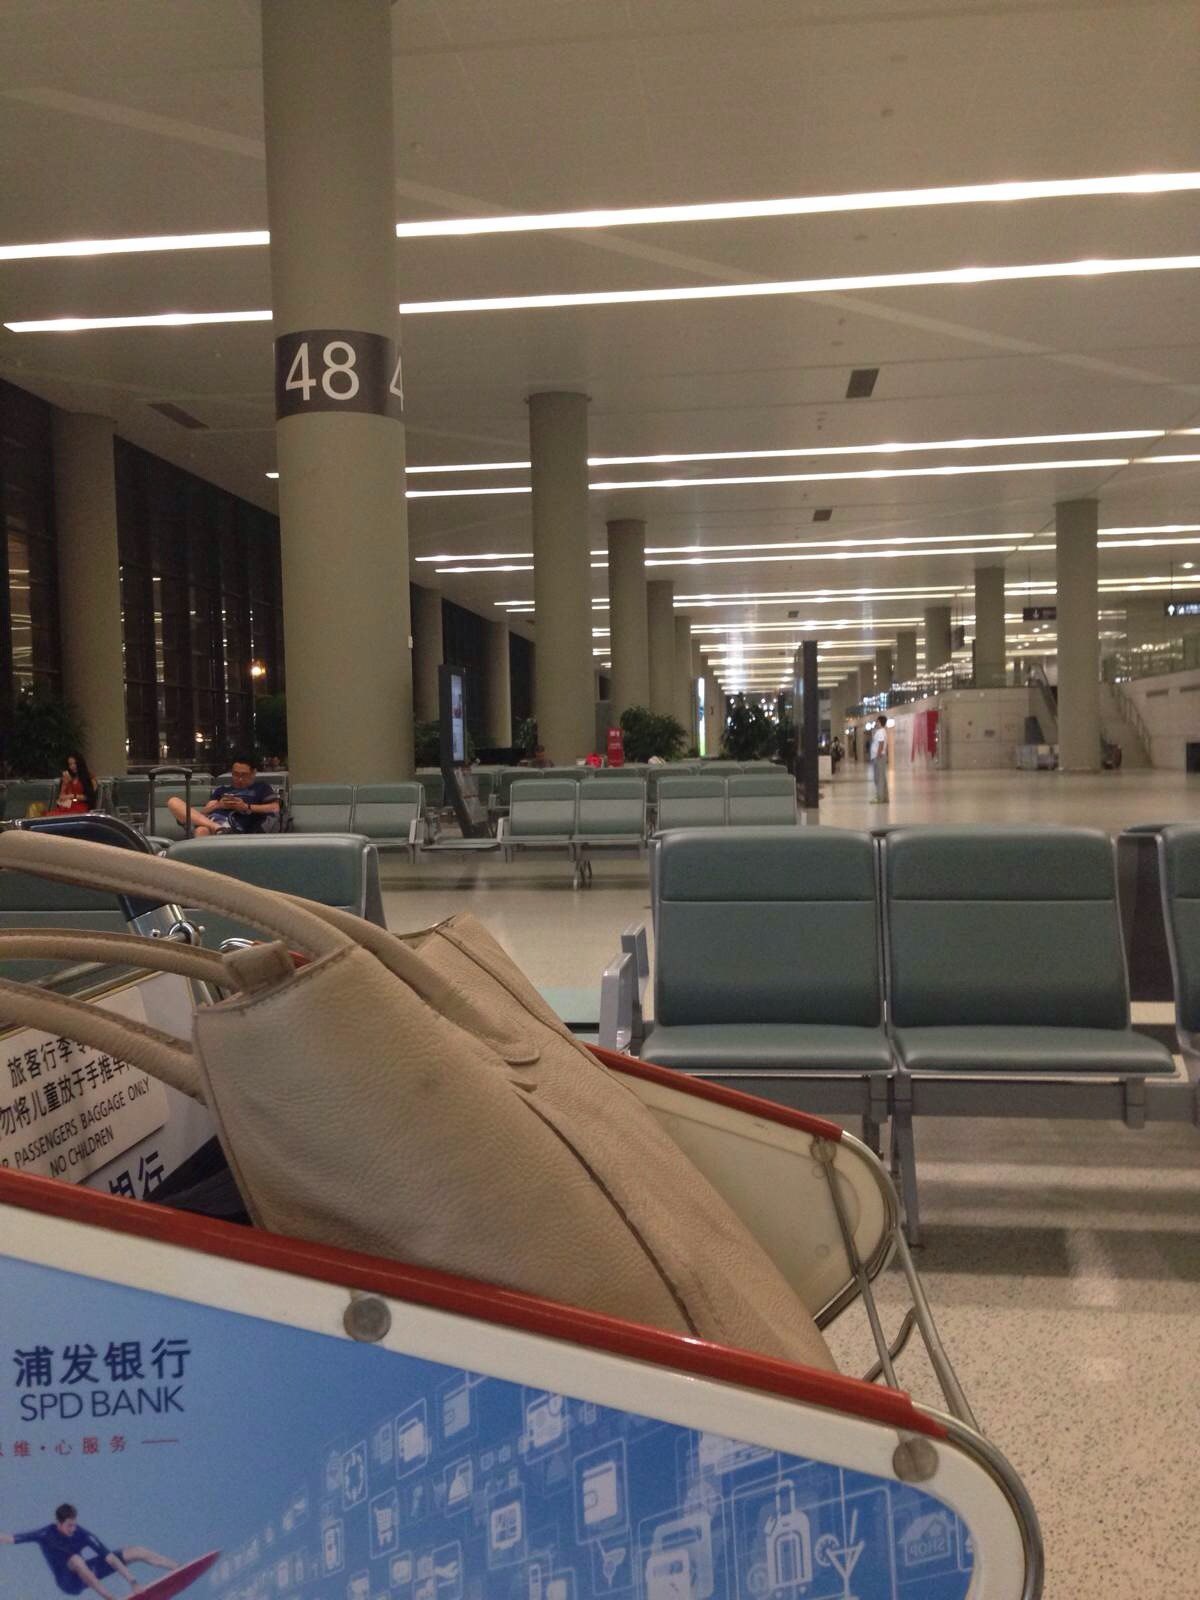 大概也就坐了三分之一的座位,这趟航空公司亏了吧 上海虹桥机场